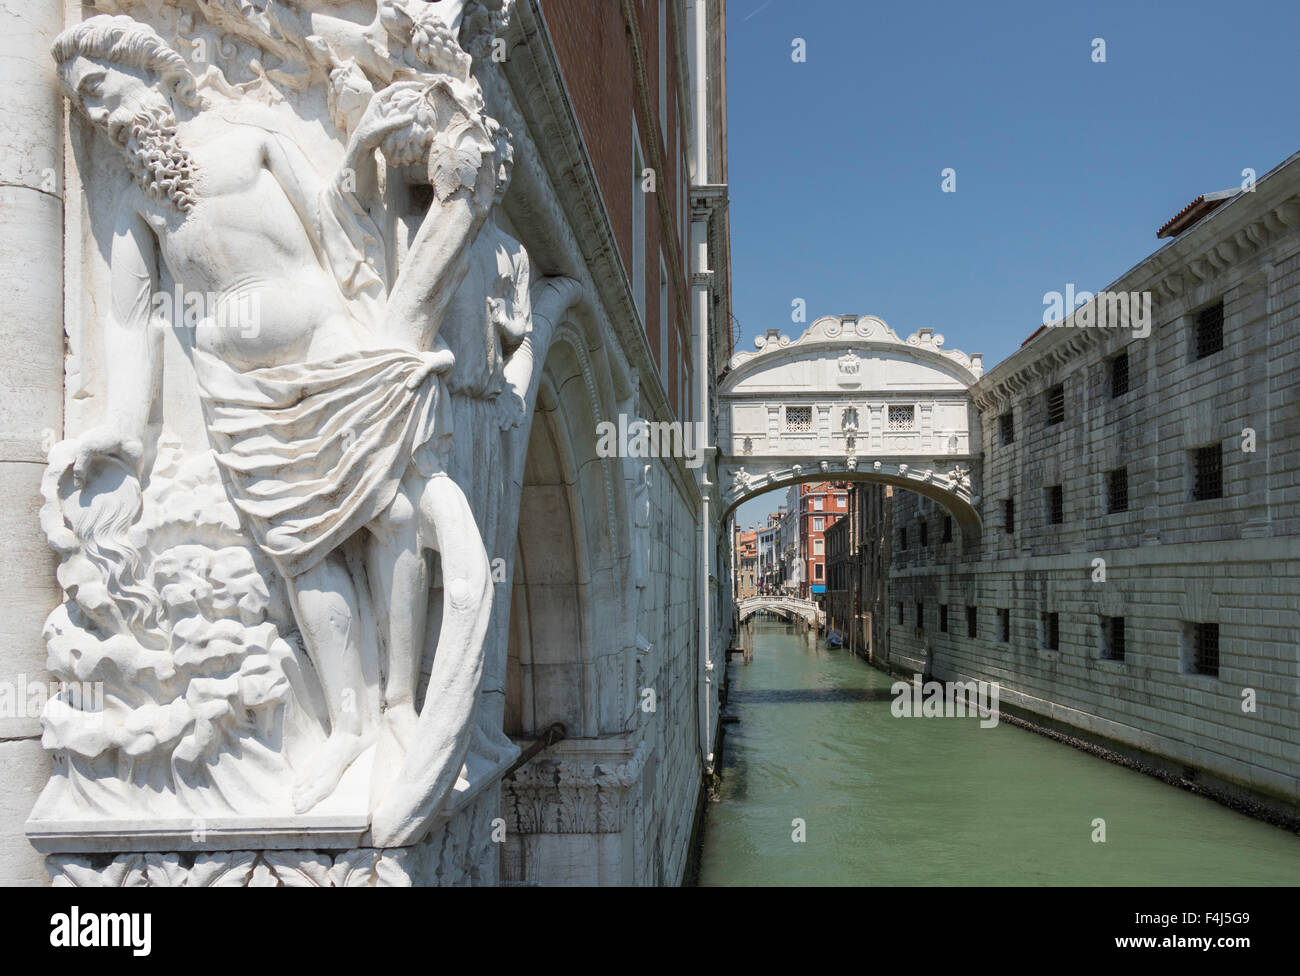 L'ivresse de Noé sur palais des Doges et le Pont des Soupirs, Venise, UNESCO World Heritage Site, Vénétie, Italie, Europe Banque D'Images